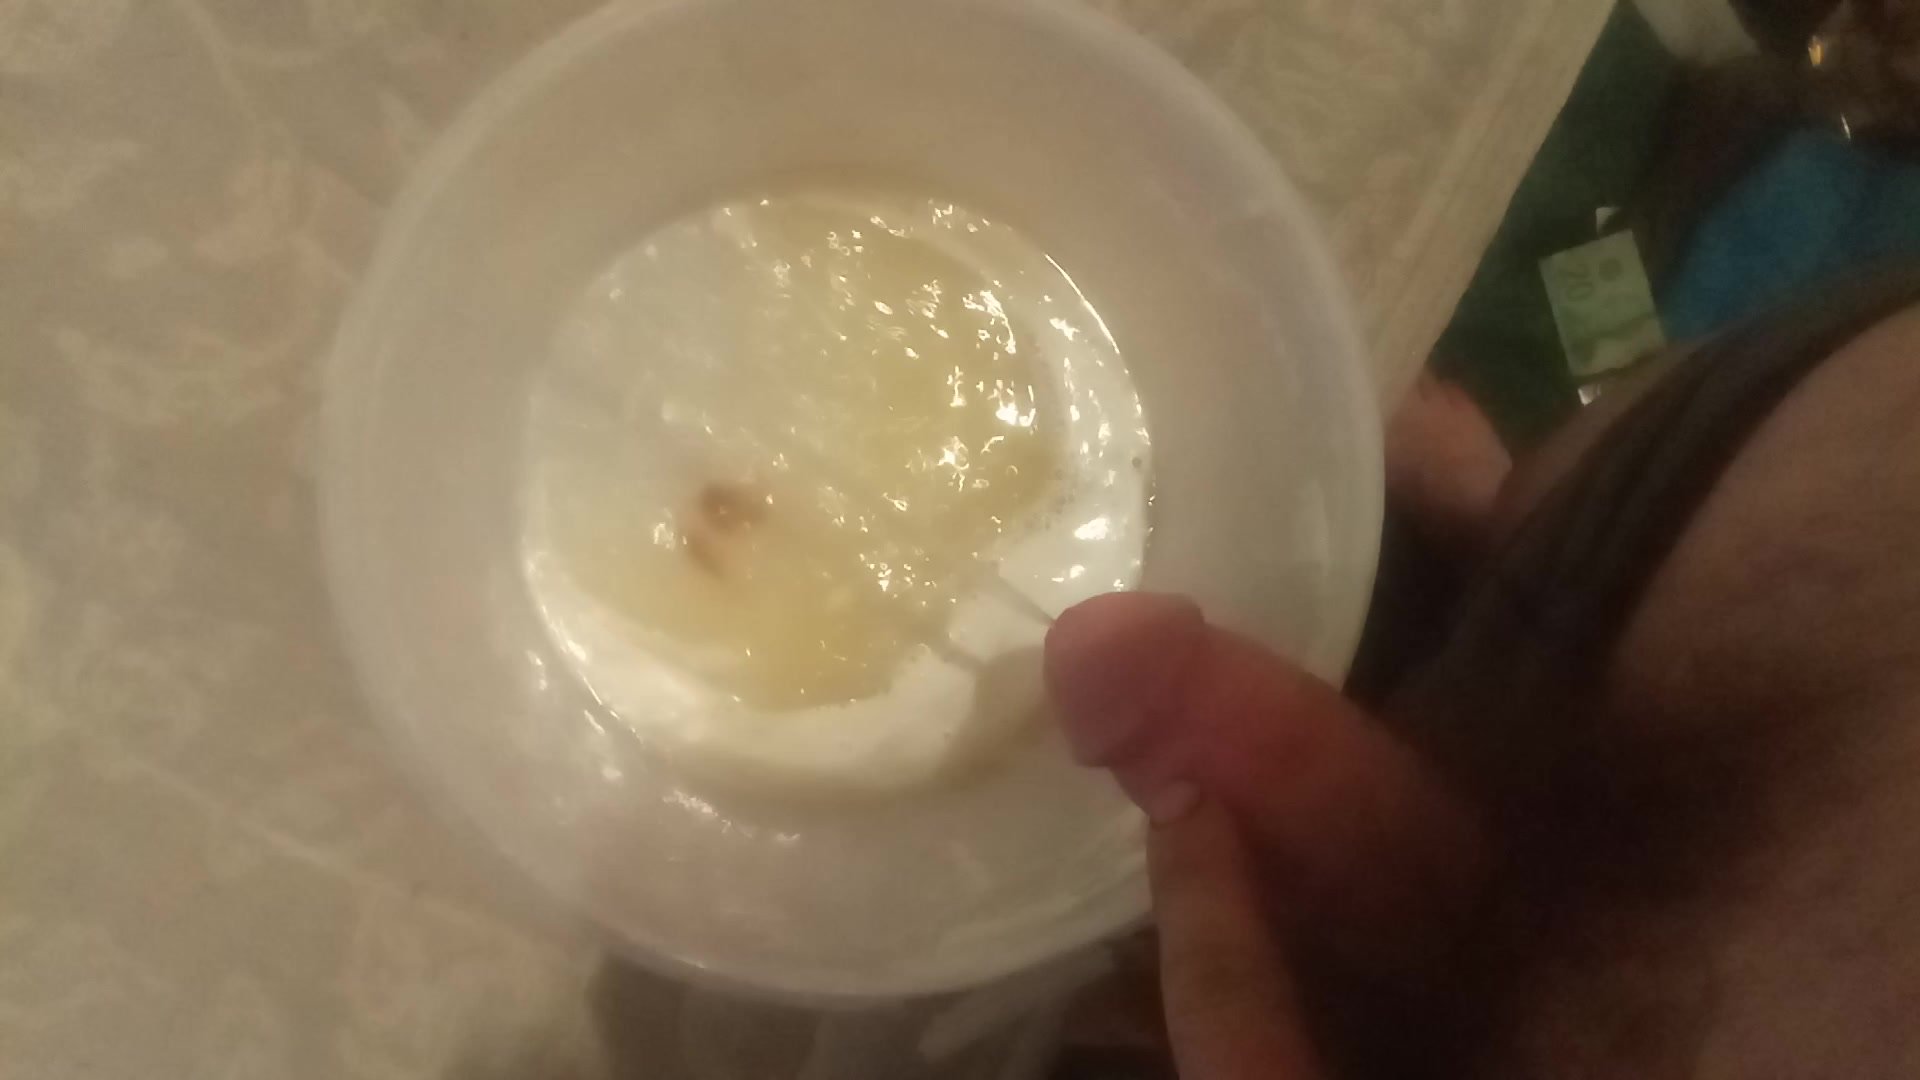 Me pissing in ice cream container.